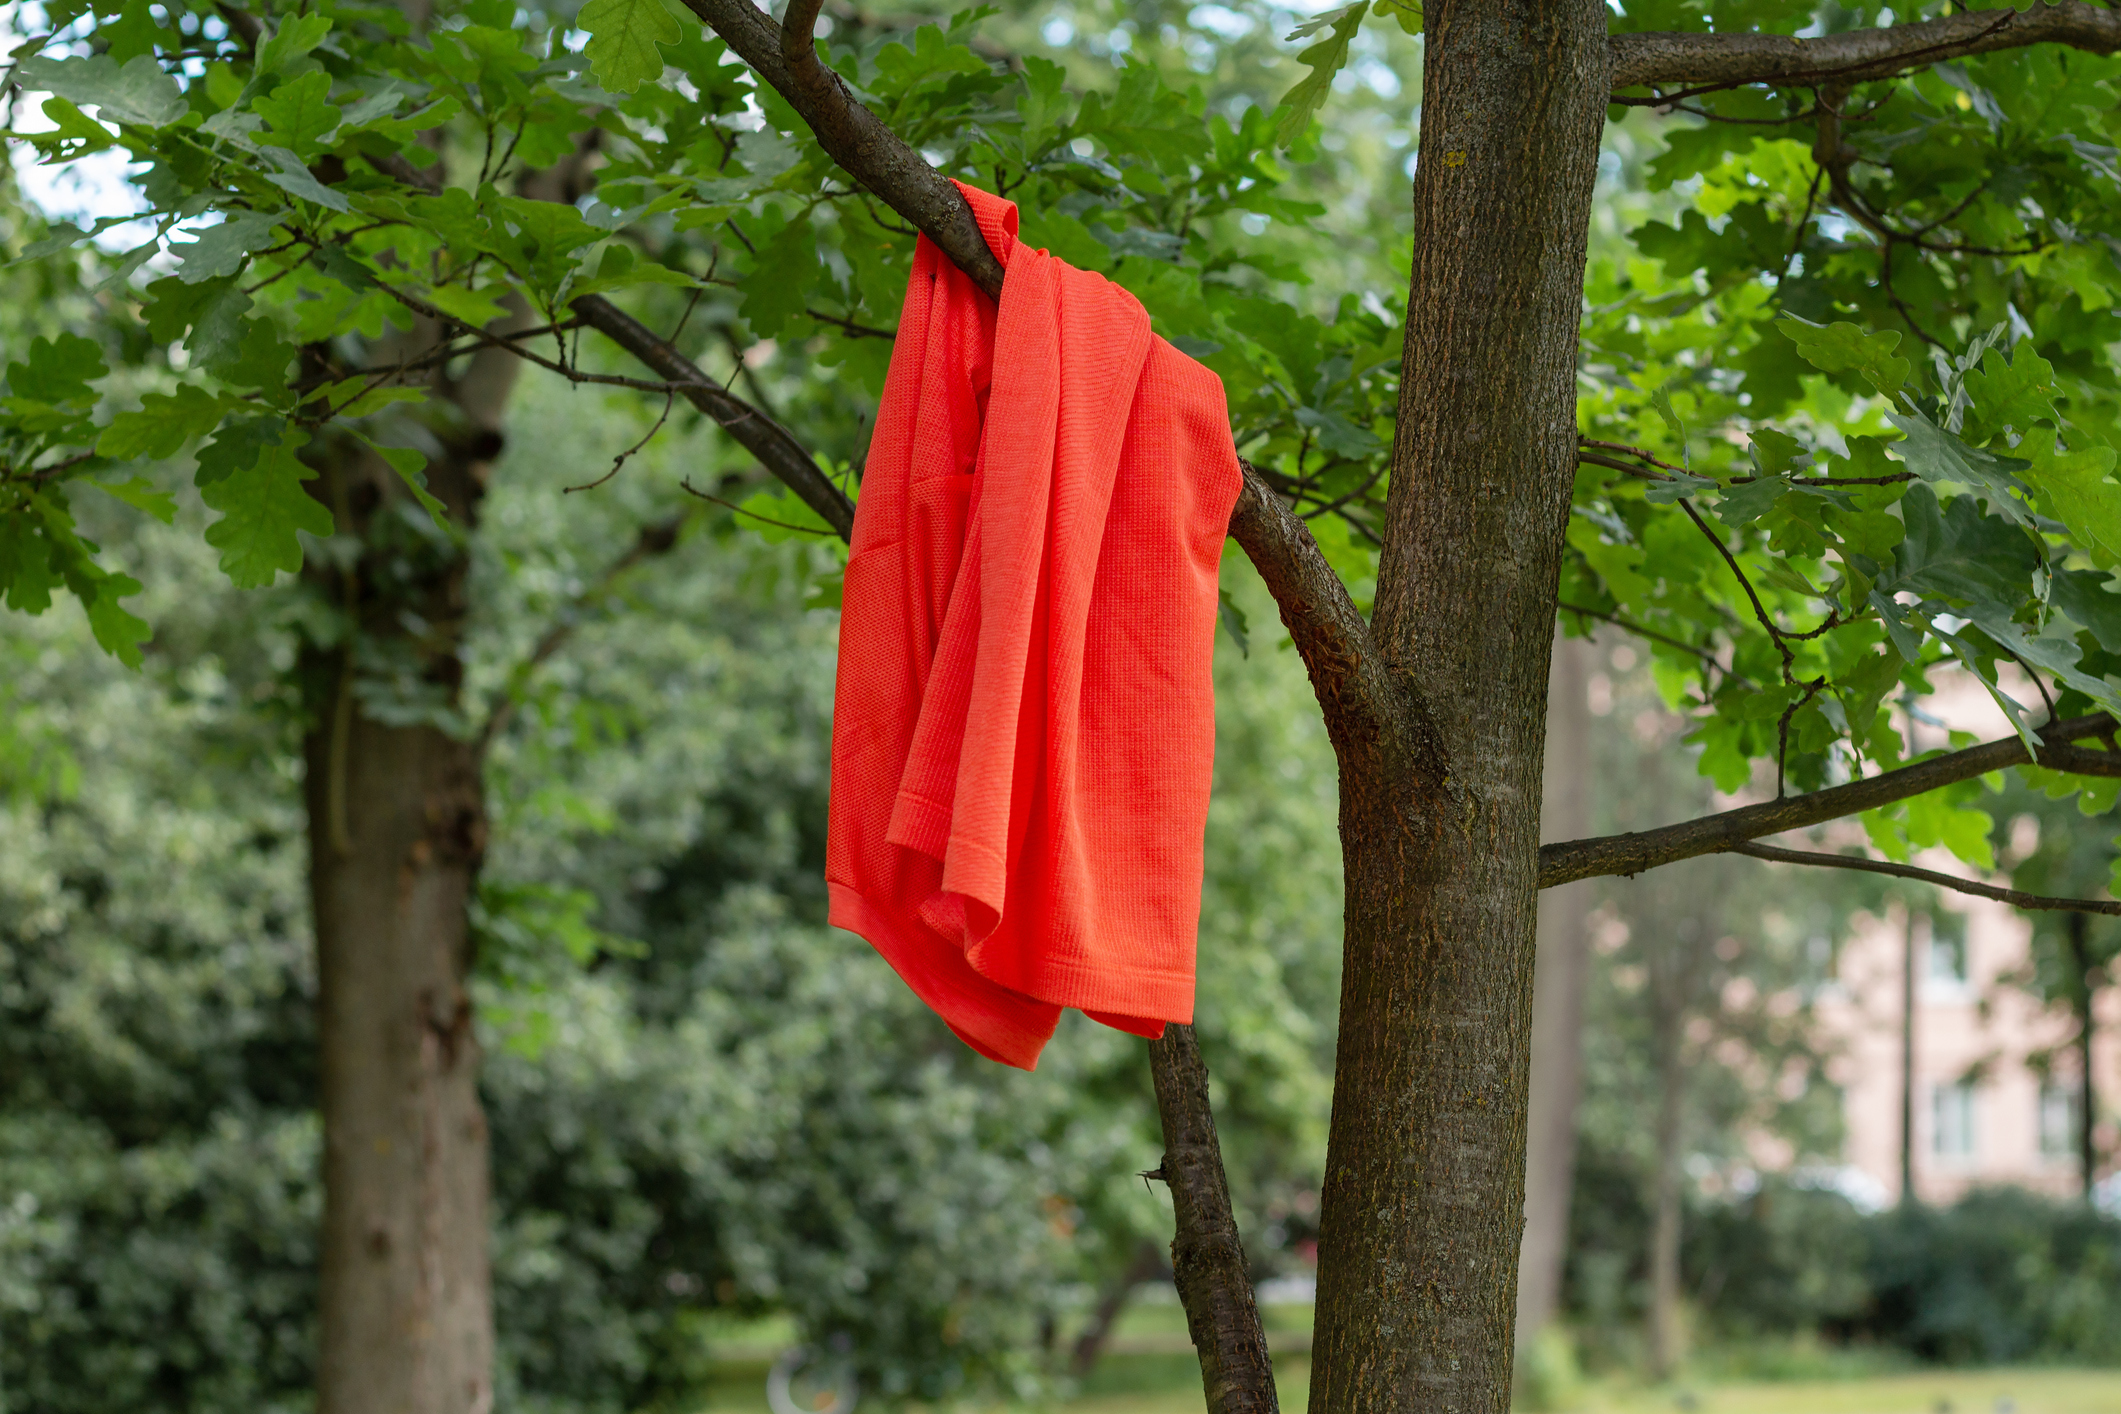 Orange shirt hanging on a tree branch.